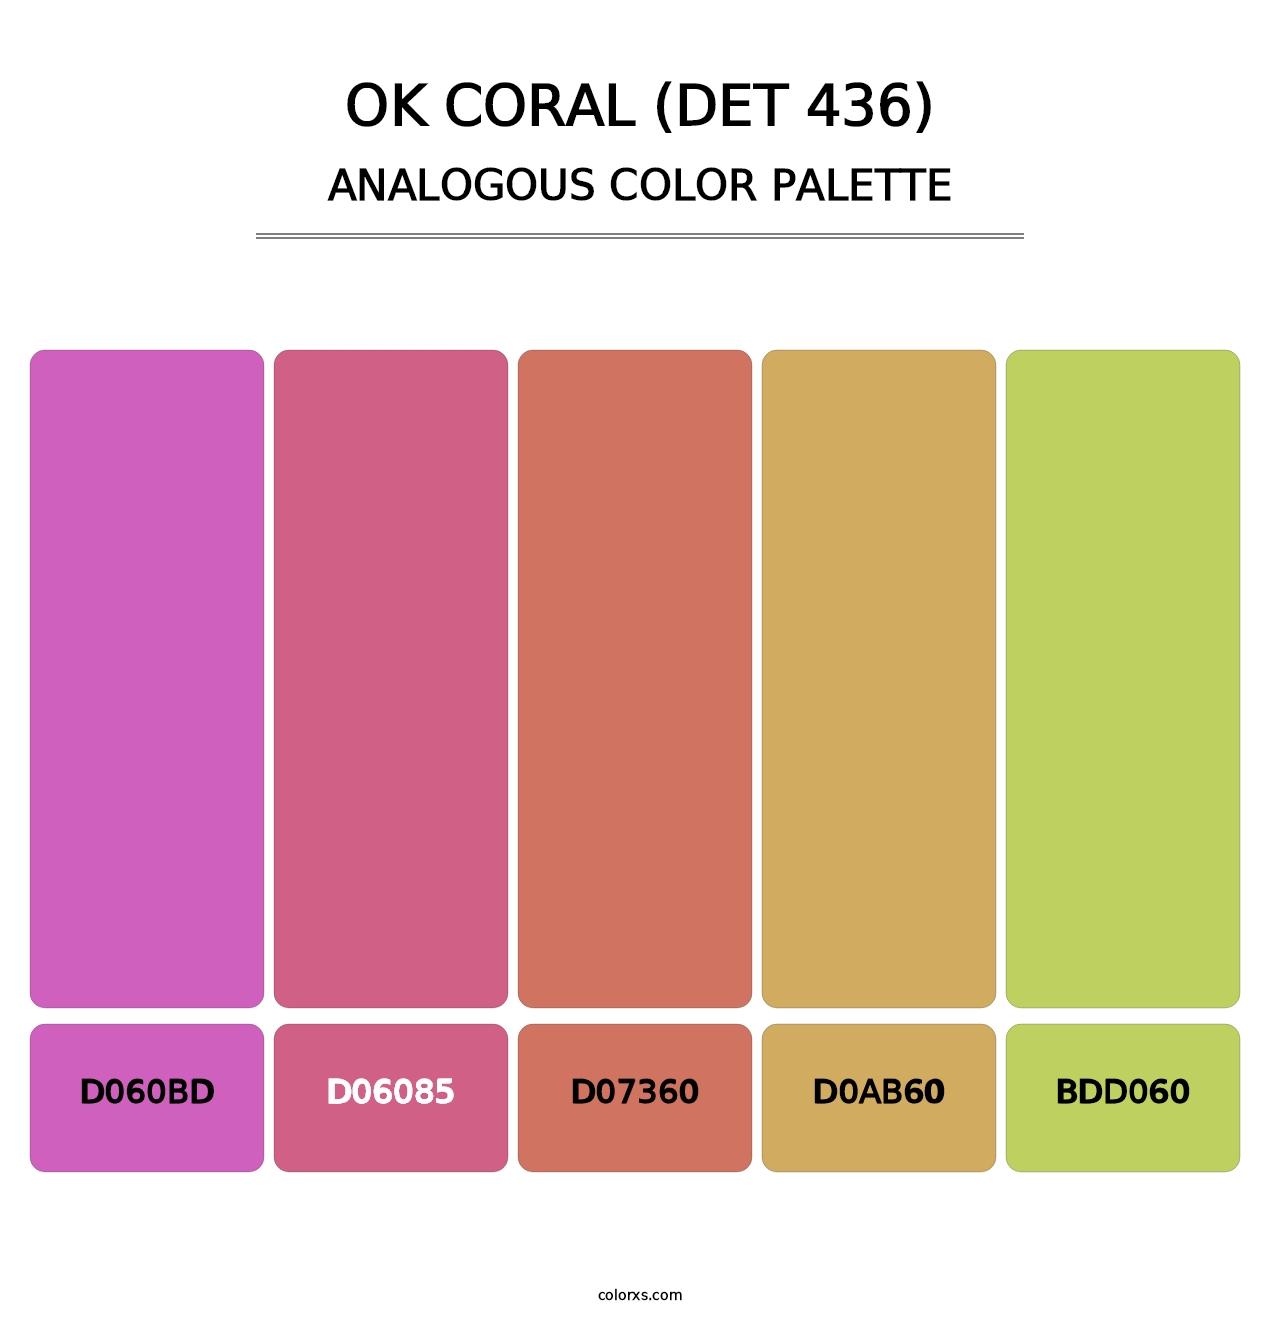 OK Coral (DET 436) - Analogous Color Palette